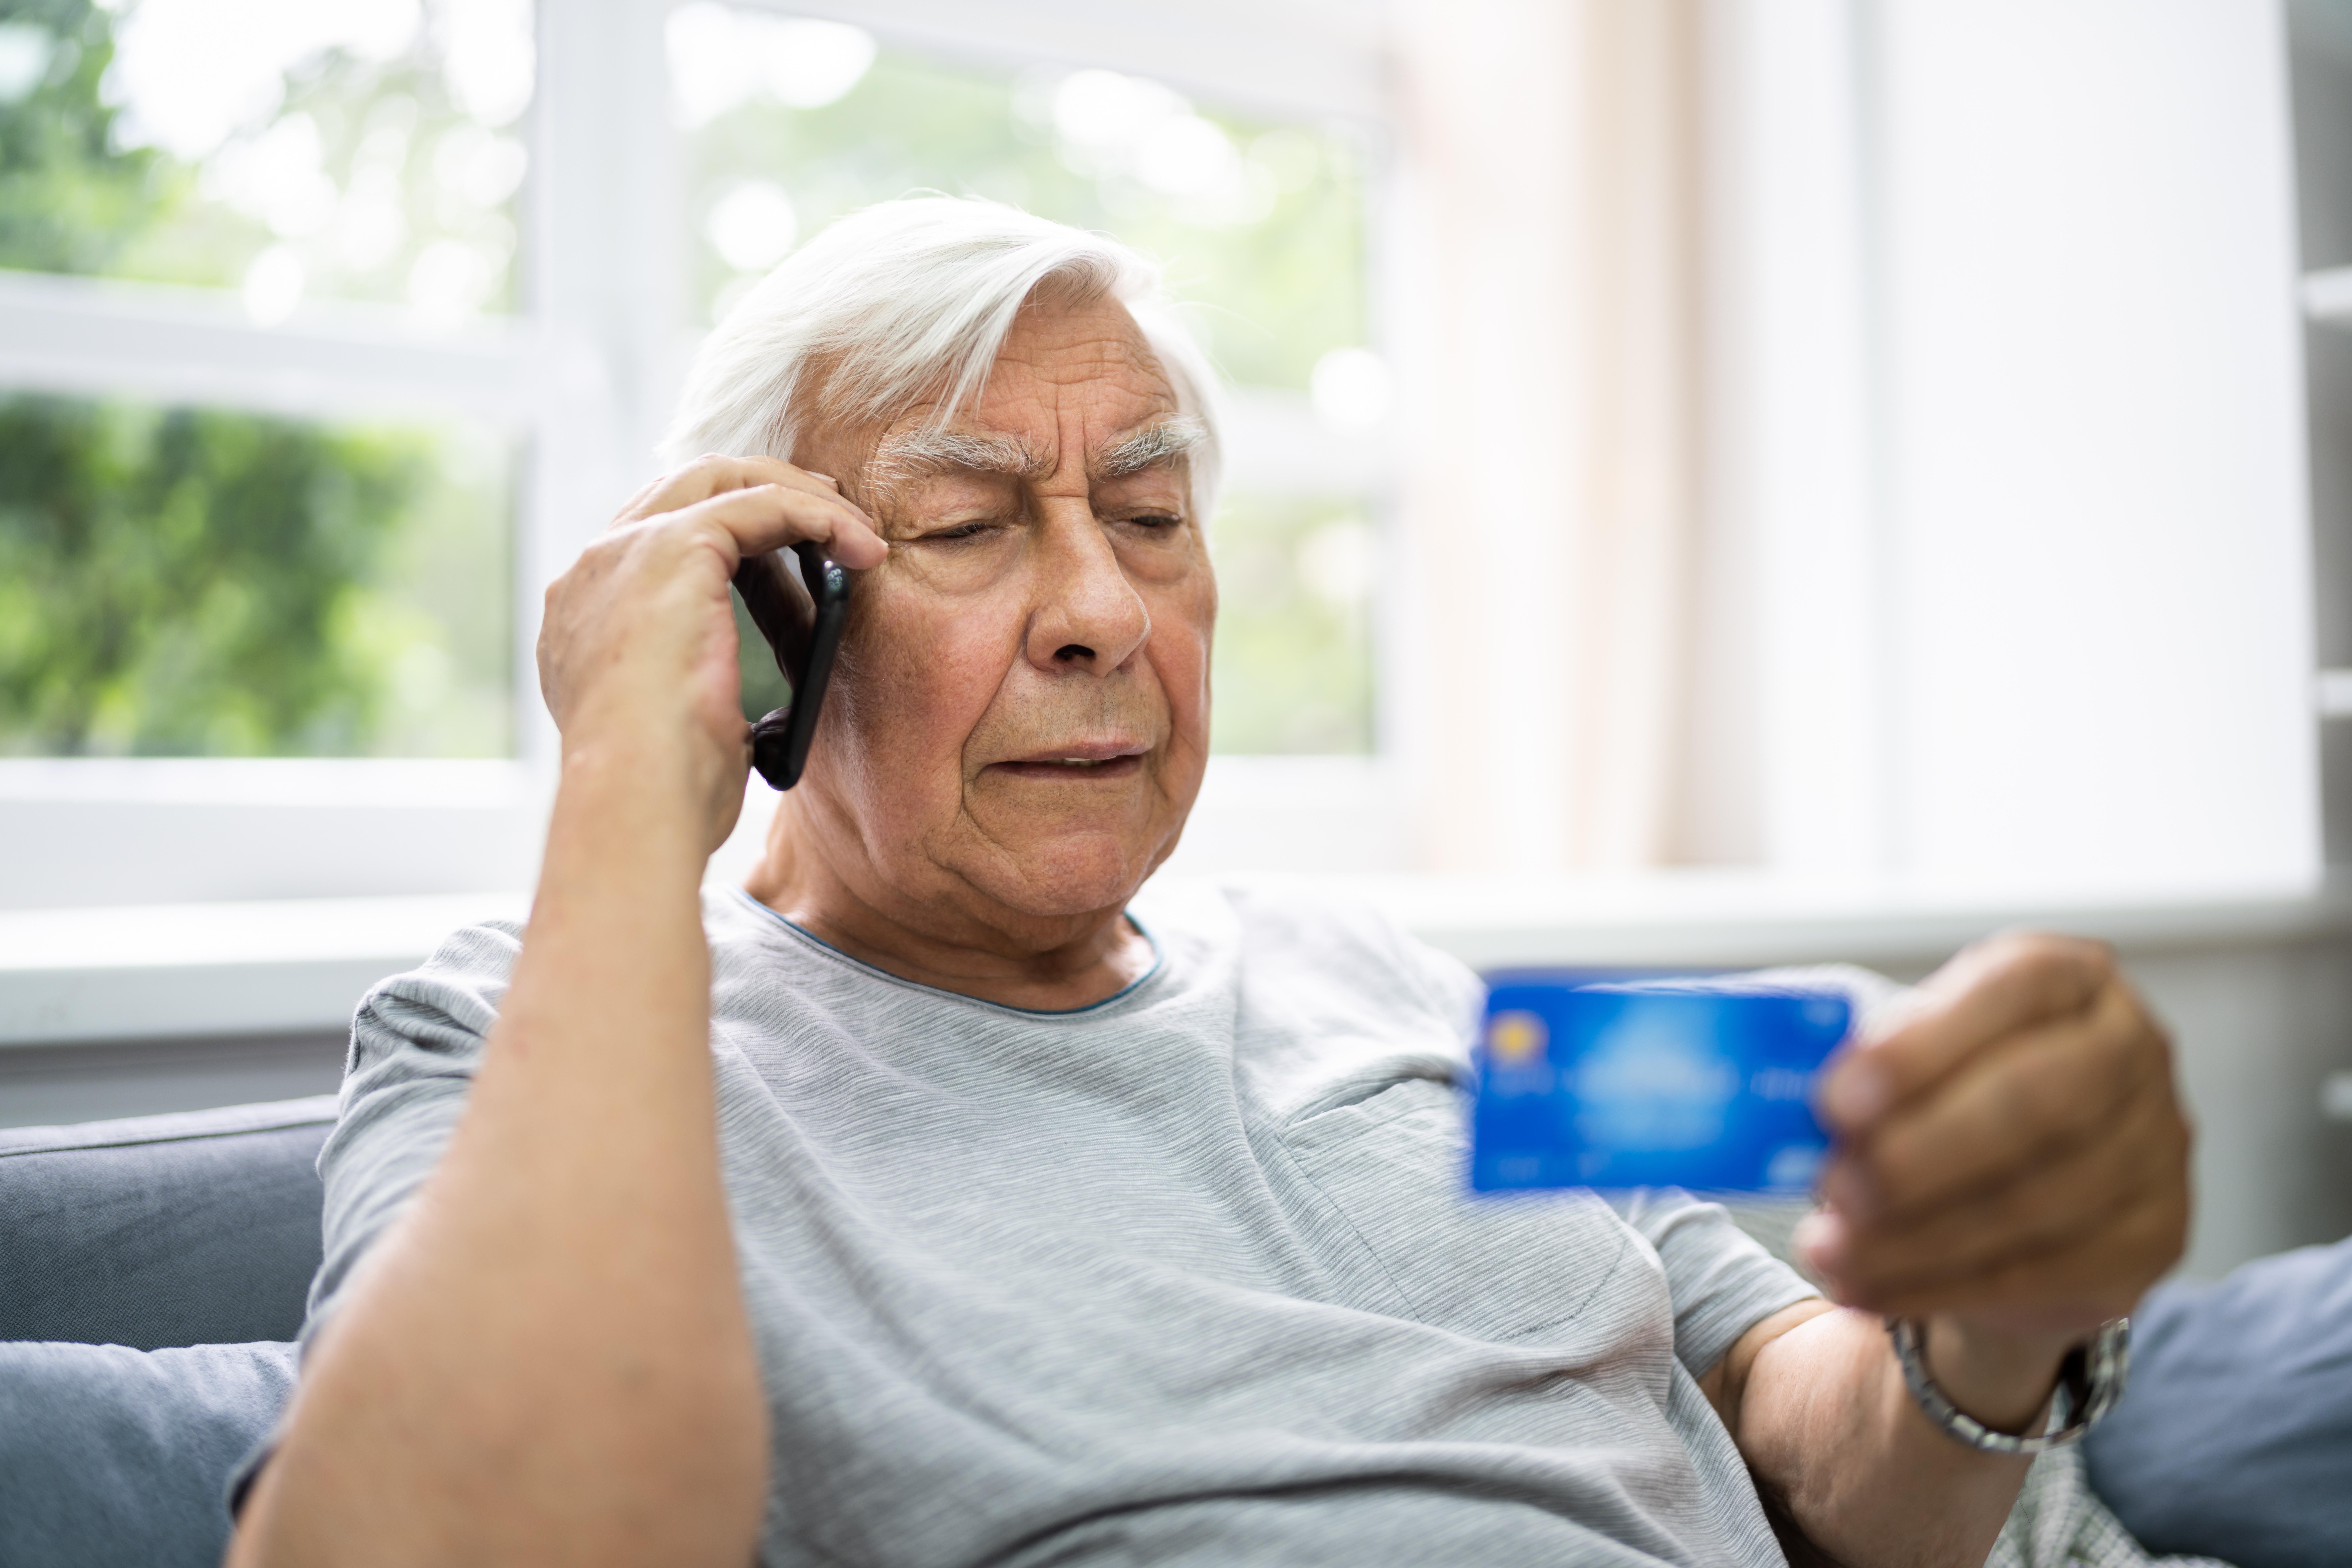 Telefonon vadásznak az öregekre a végrehajtós csalók